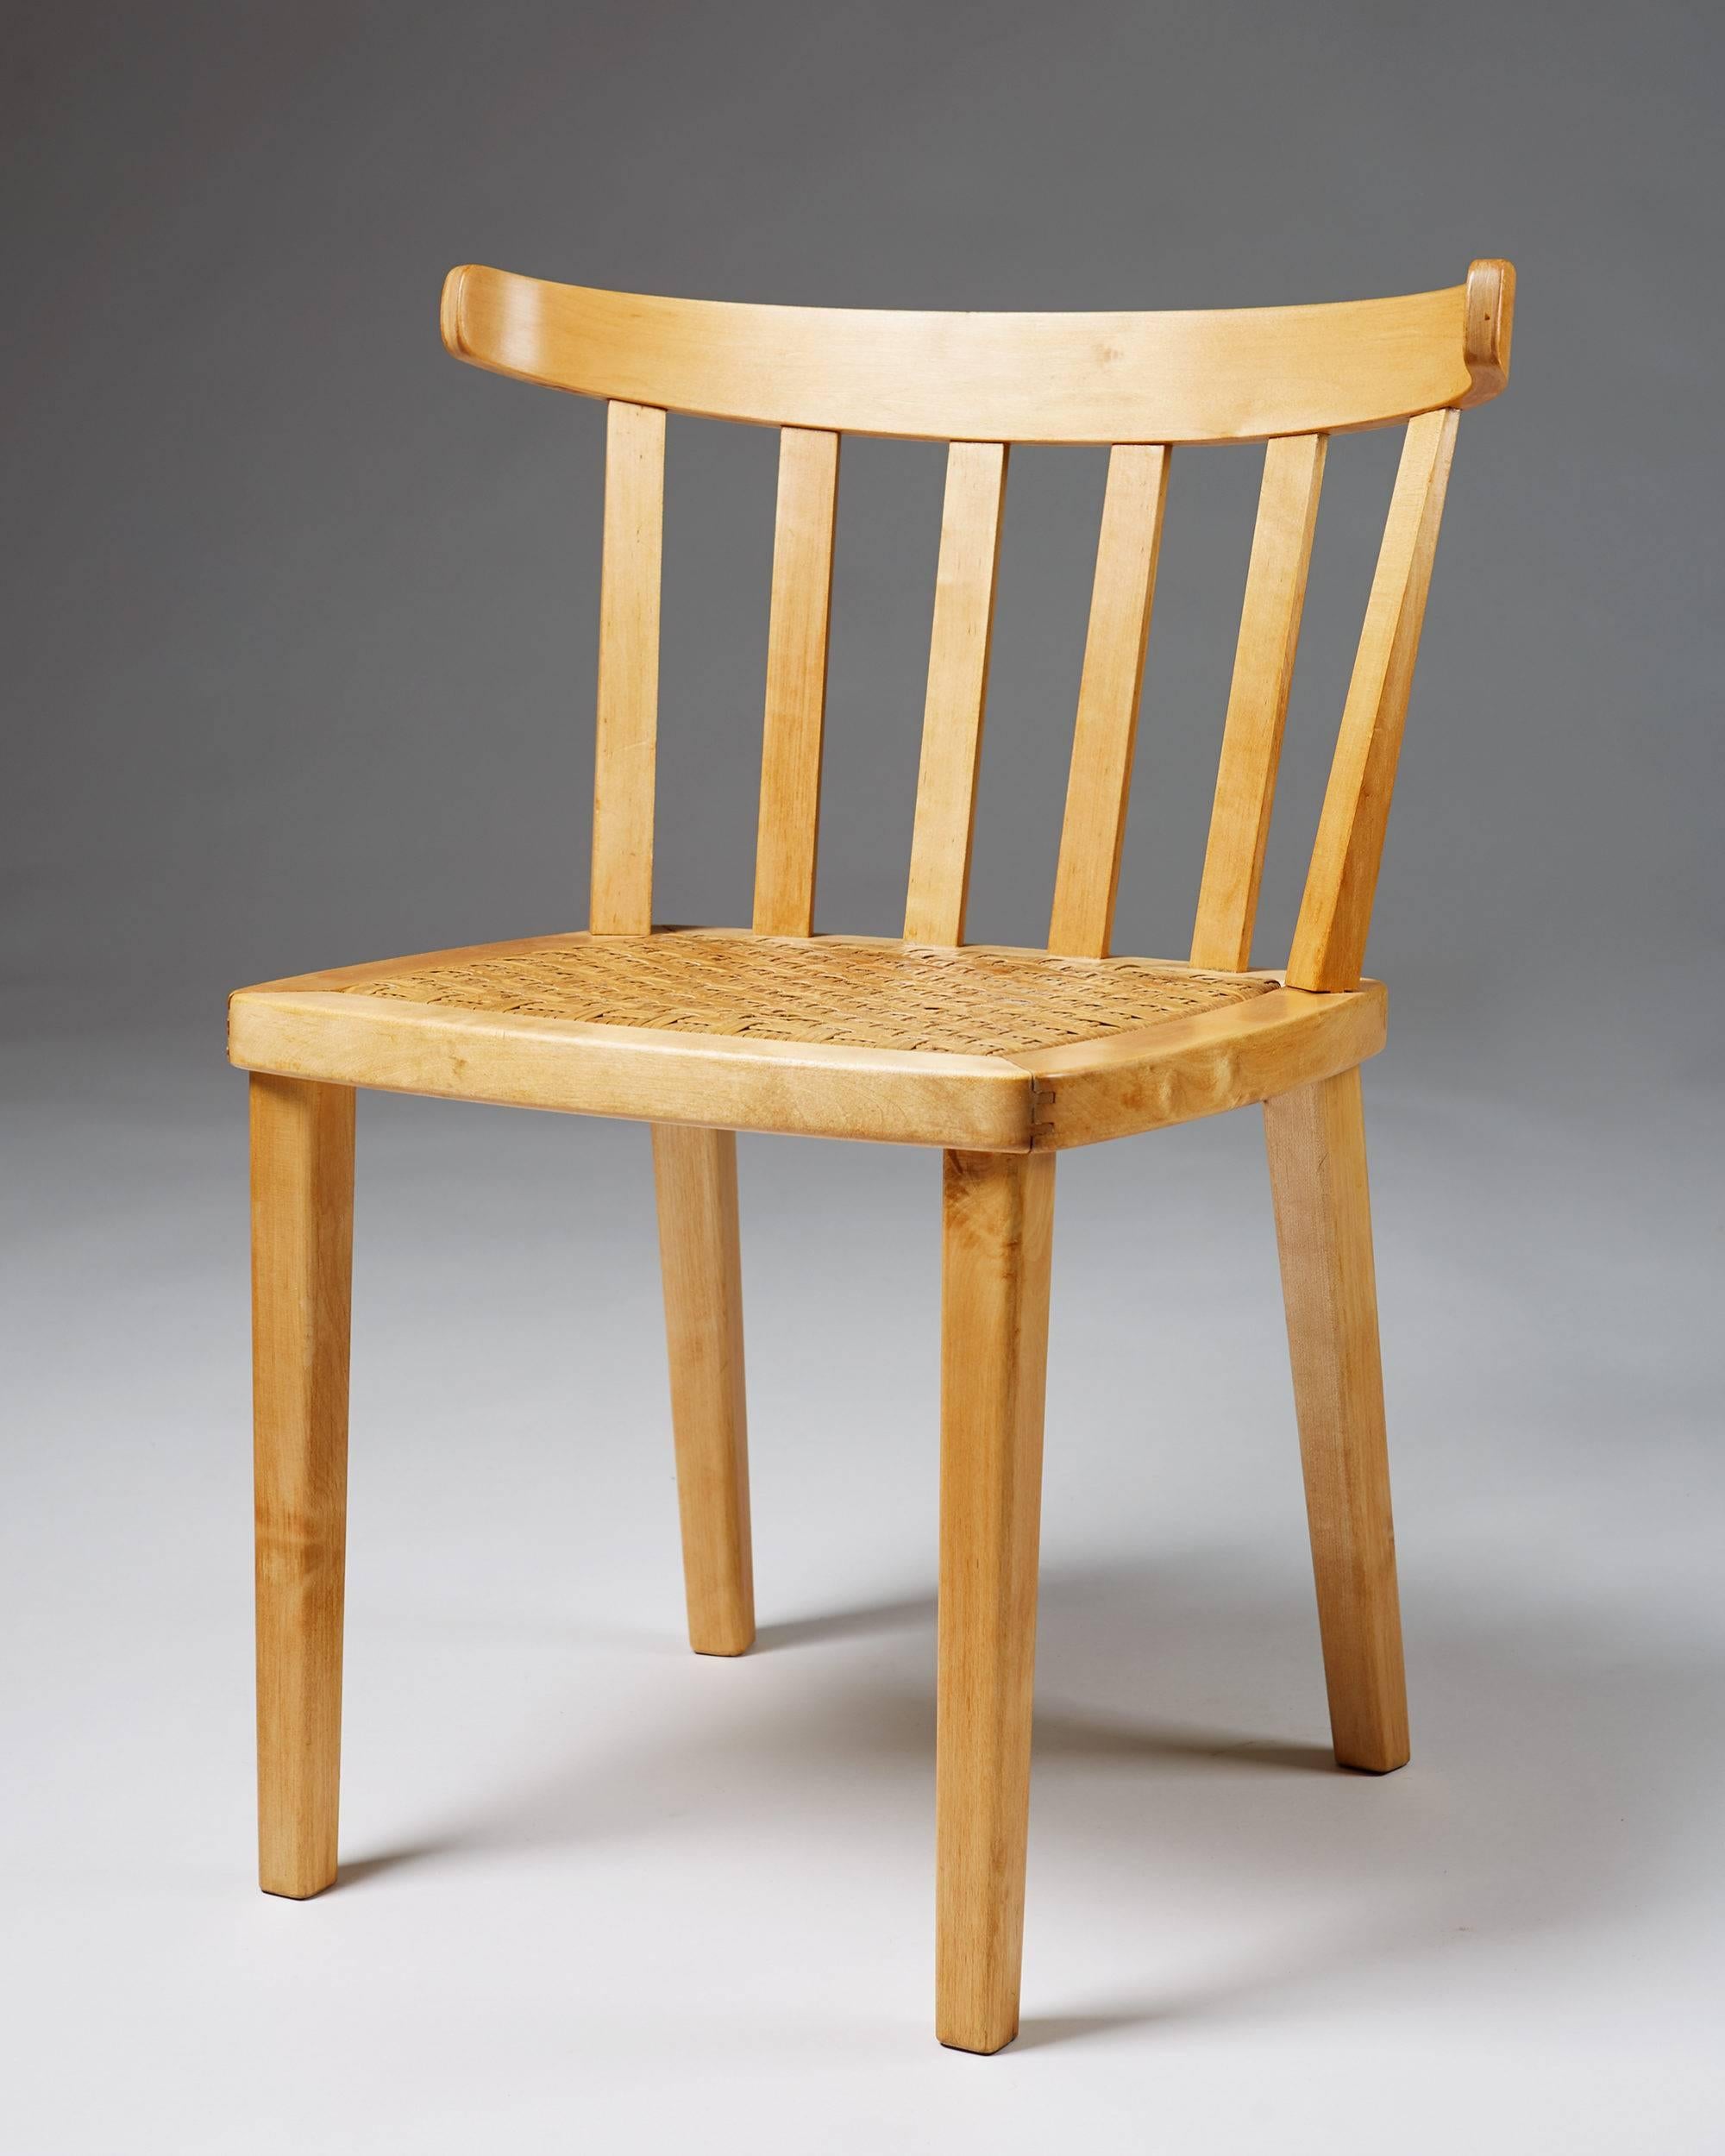 Satz von zehn Esszimmerstühlen, entworfen von Aino Aalto für Artek, Finnland, 1950er Jahre.
Birke und Schilfrohr.
Sehr seltenes Modell.

Maße: H 74 cm/ 29